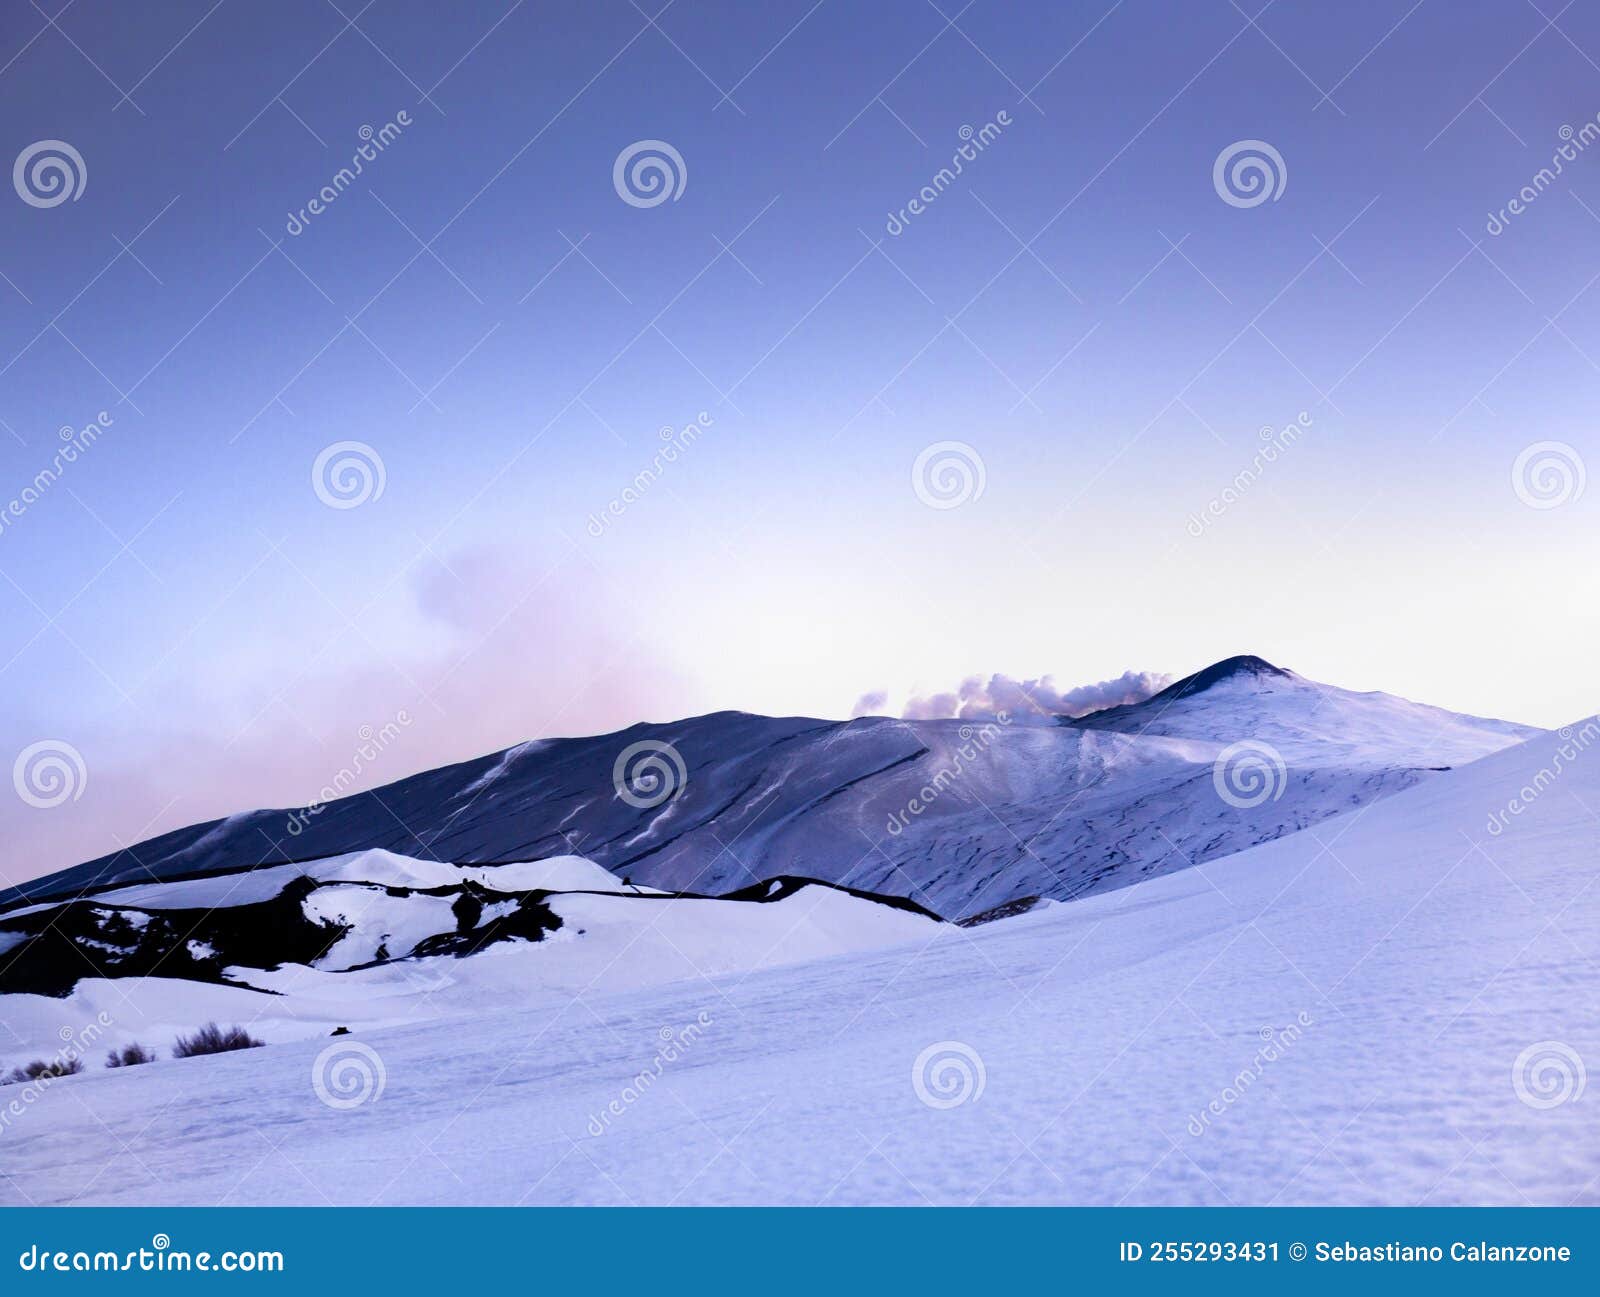 etna - paesaggio invernale con neve al tramonto durante la blue hour sul vulcano etna al crepuscolo - sicilia